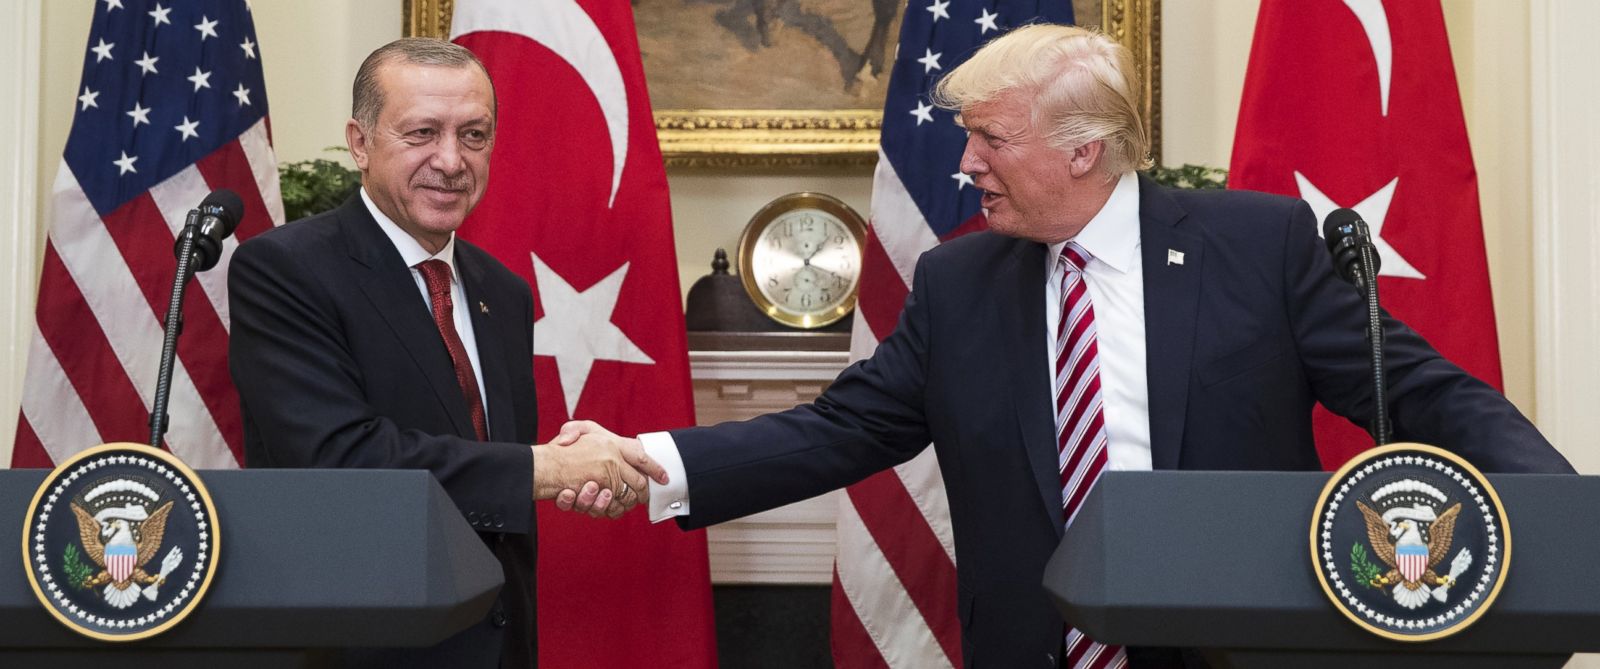 Οι ΗΠΑ «κατάπιαν» -πάλι- τις τουρκικές απειλές: Ντ.Τραμπ και Ρ.Τ. Ερντογάν συμφώνησαν σε «στενή συνεργασία»